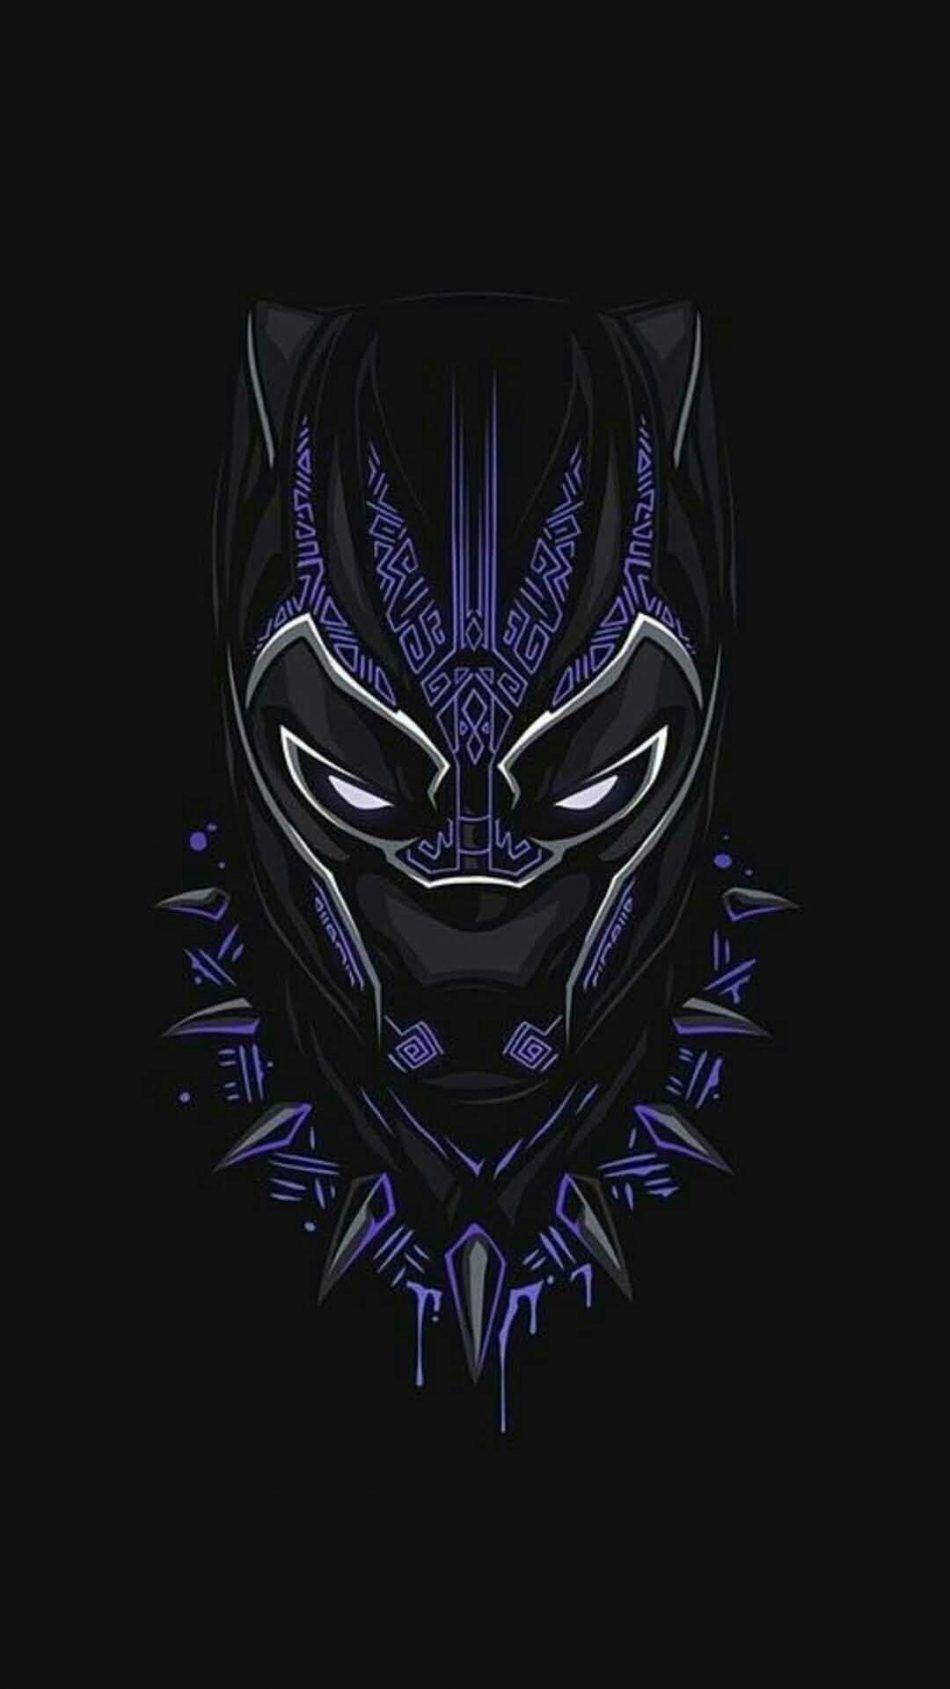 Rip Black Panther Wallpapers - Top Những Hình Ảnh Đẹp